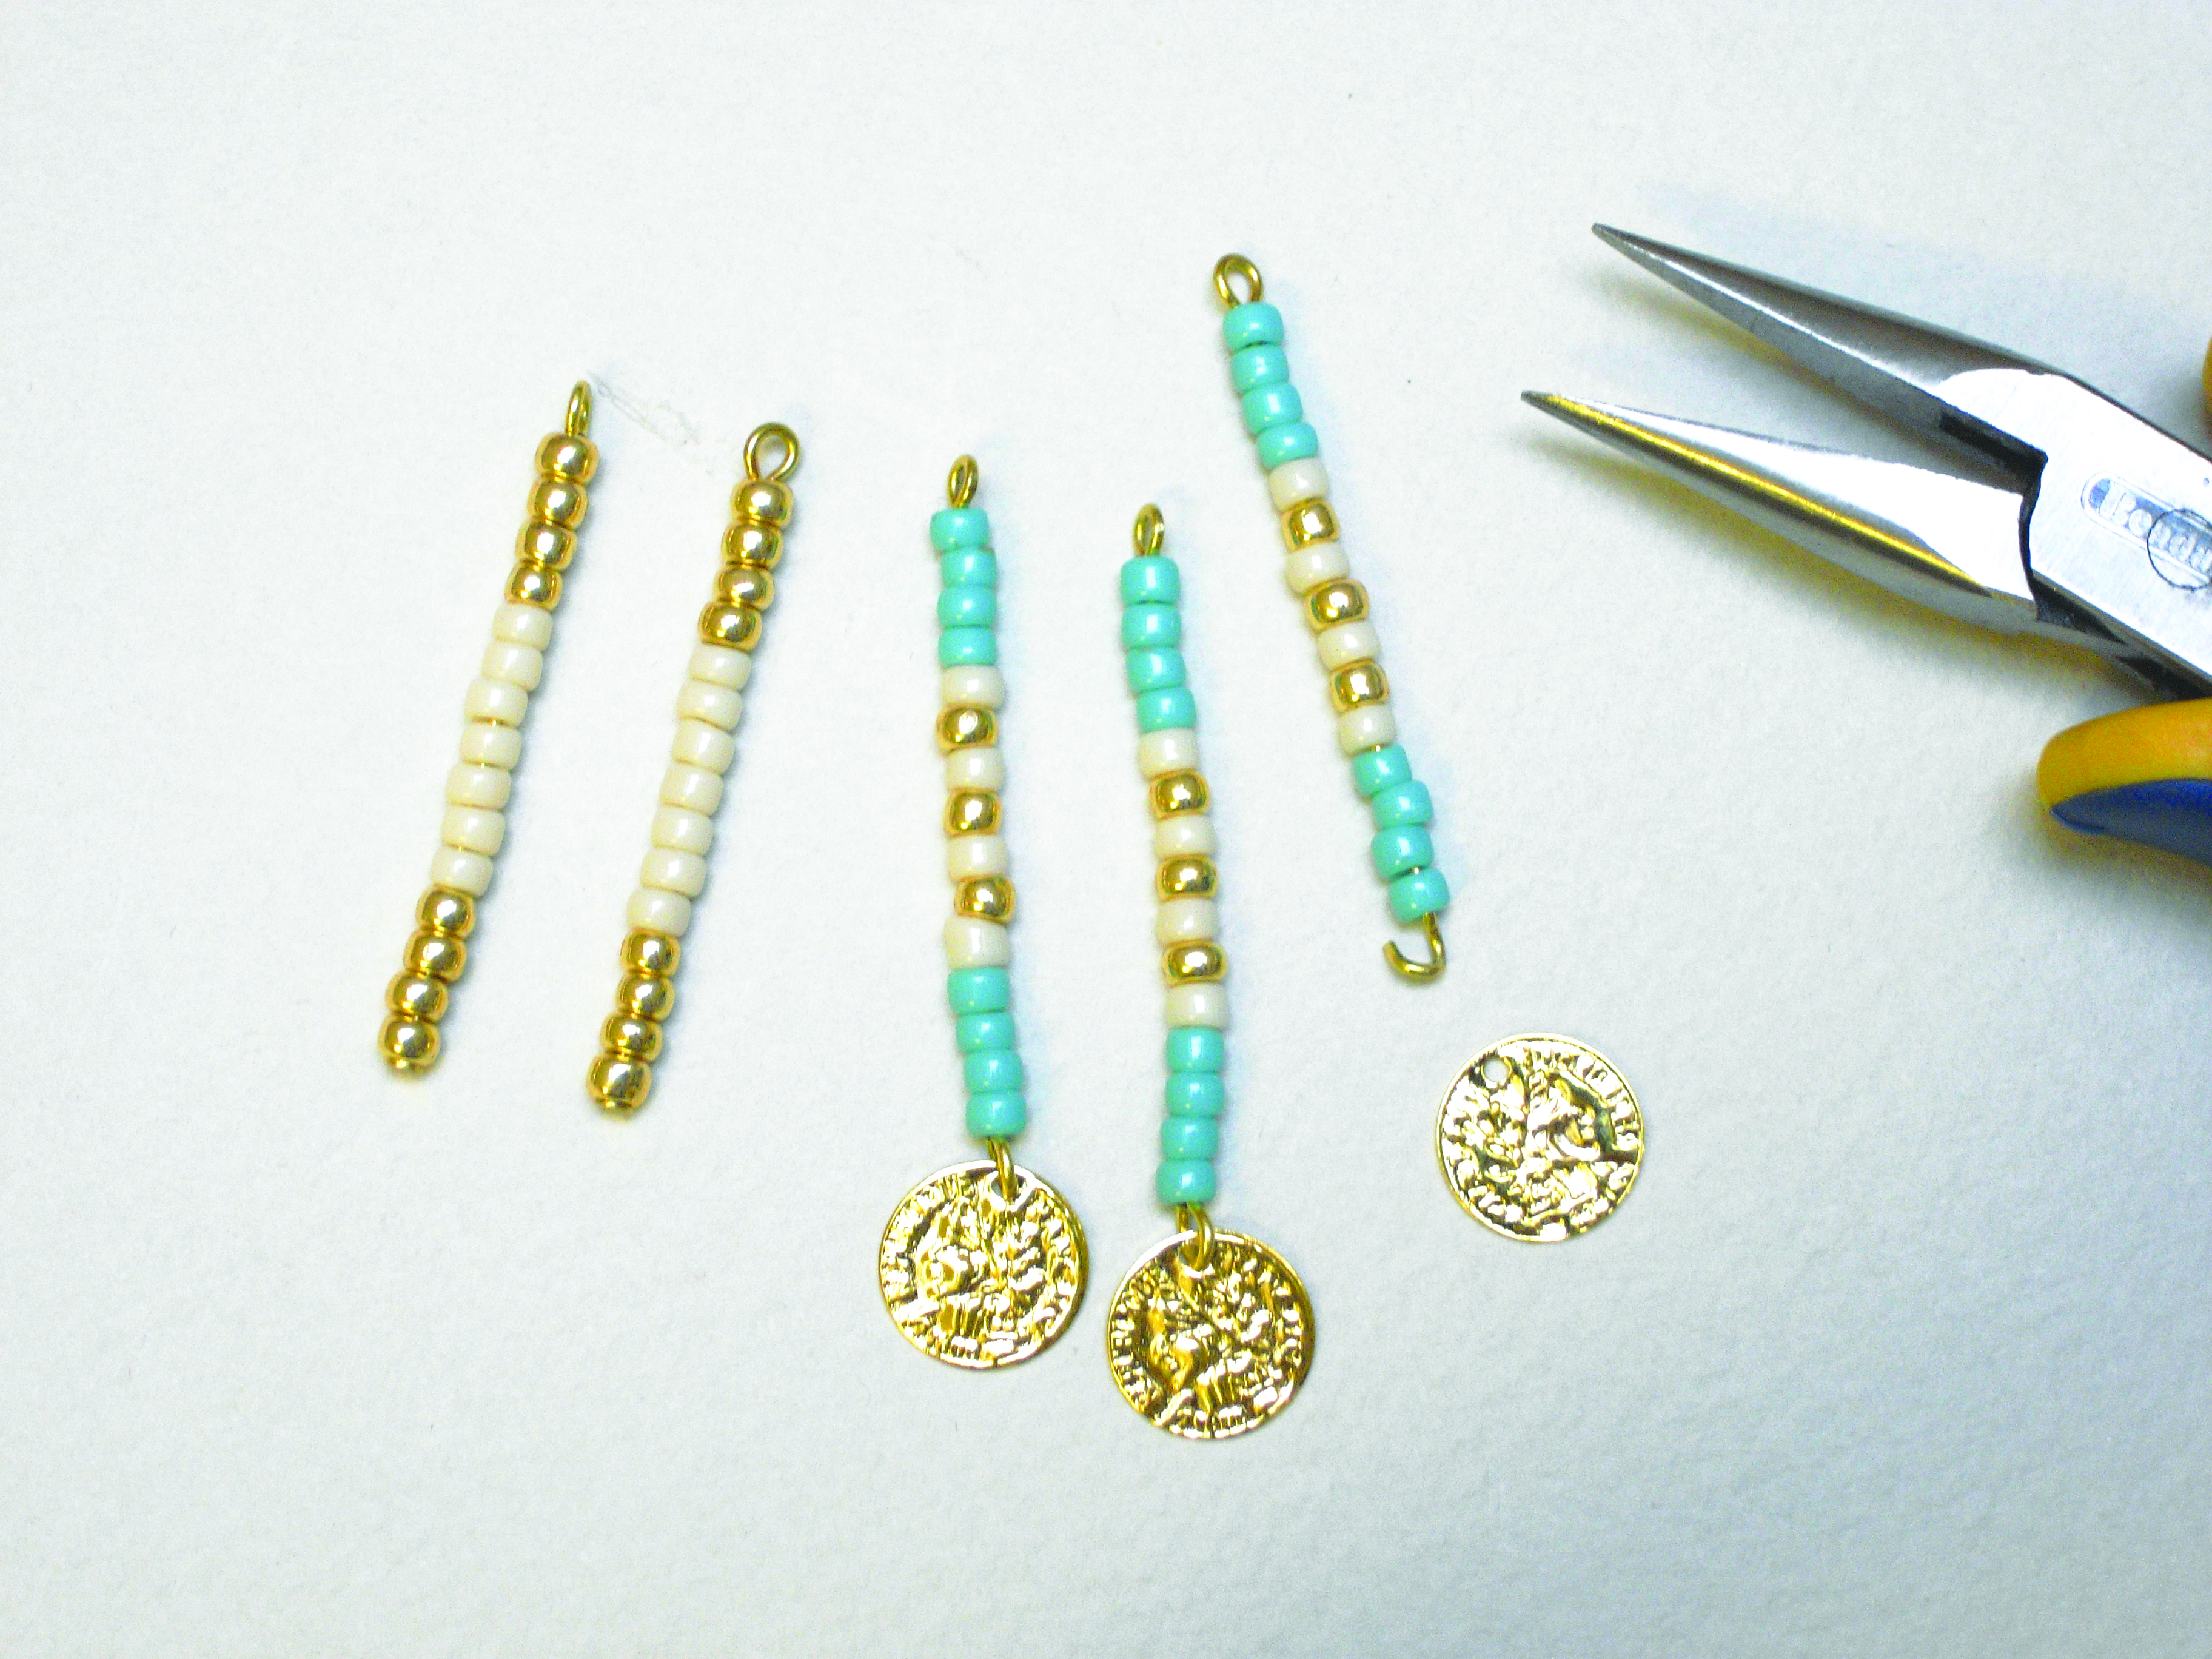 How to make seed bead earrings